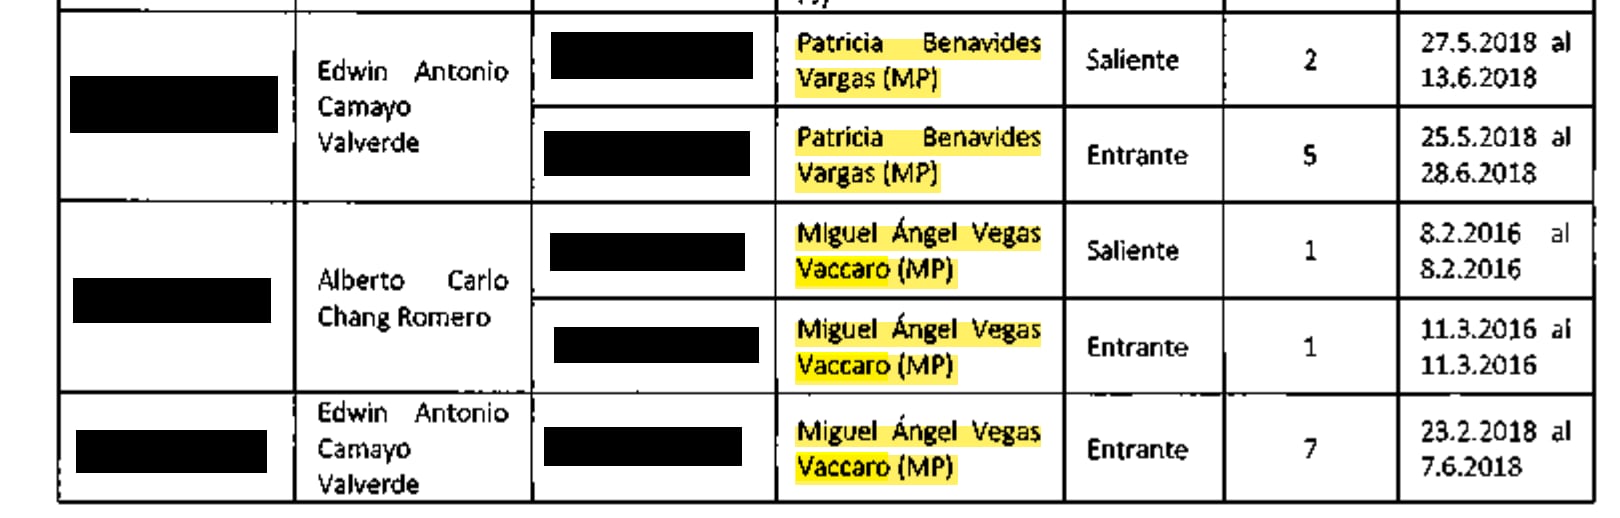 Registro de llamadas de Miguel Vegas Vaccaro con Antonio Camayo.